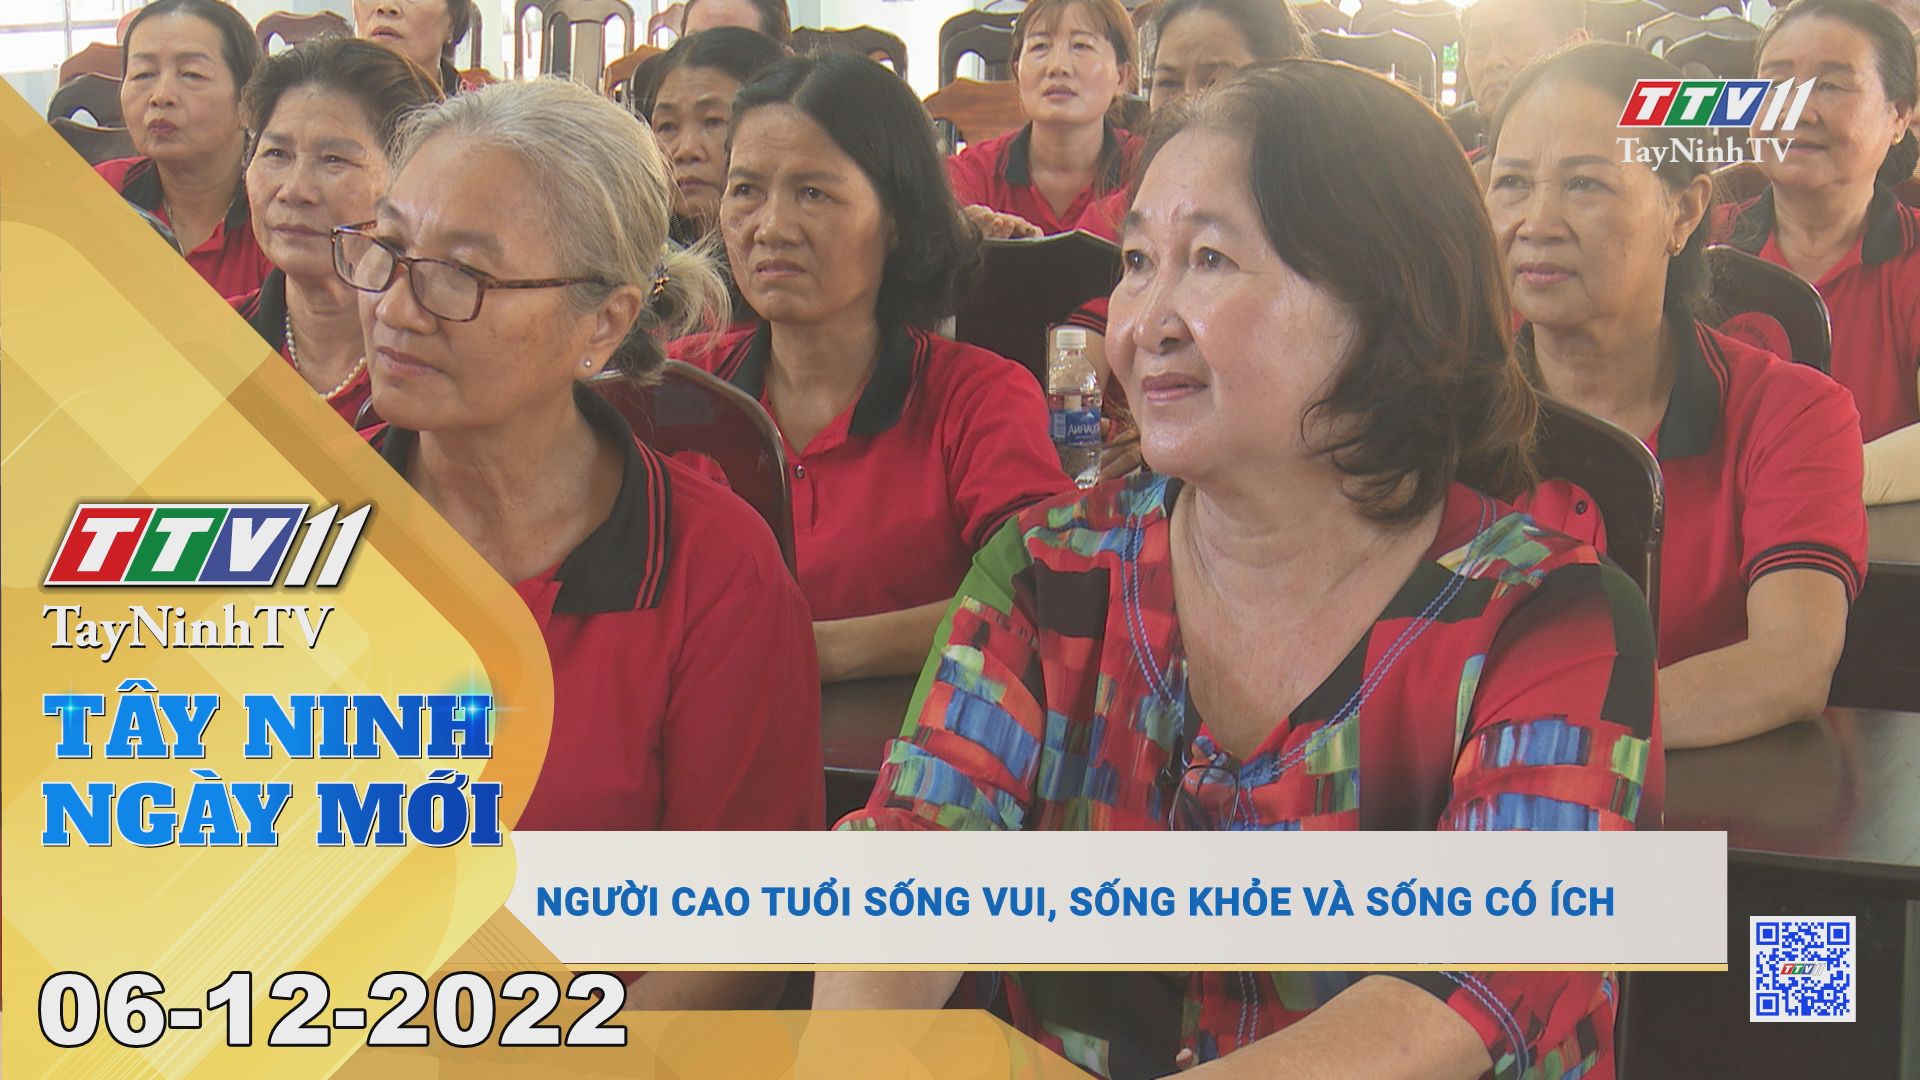 Tây Ninh ngày mới 06-12-2022 | Tin tức hôm nay | TayNinhTV